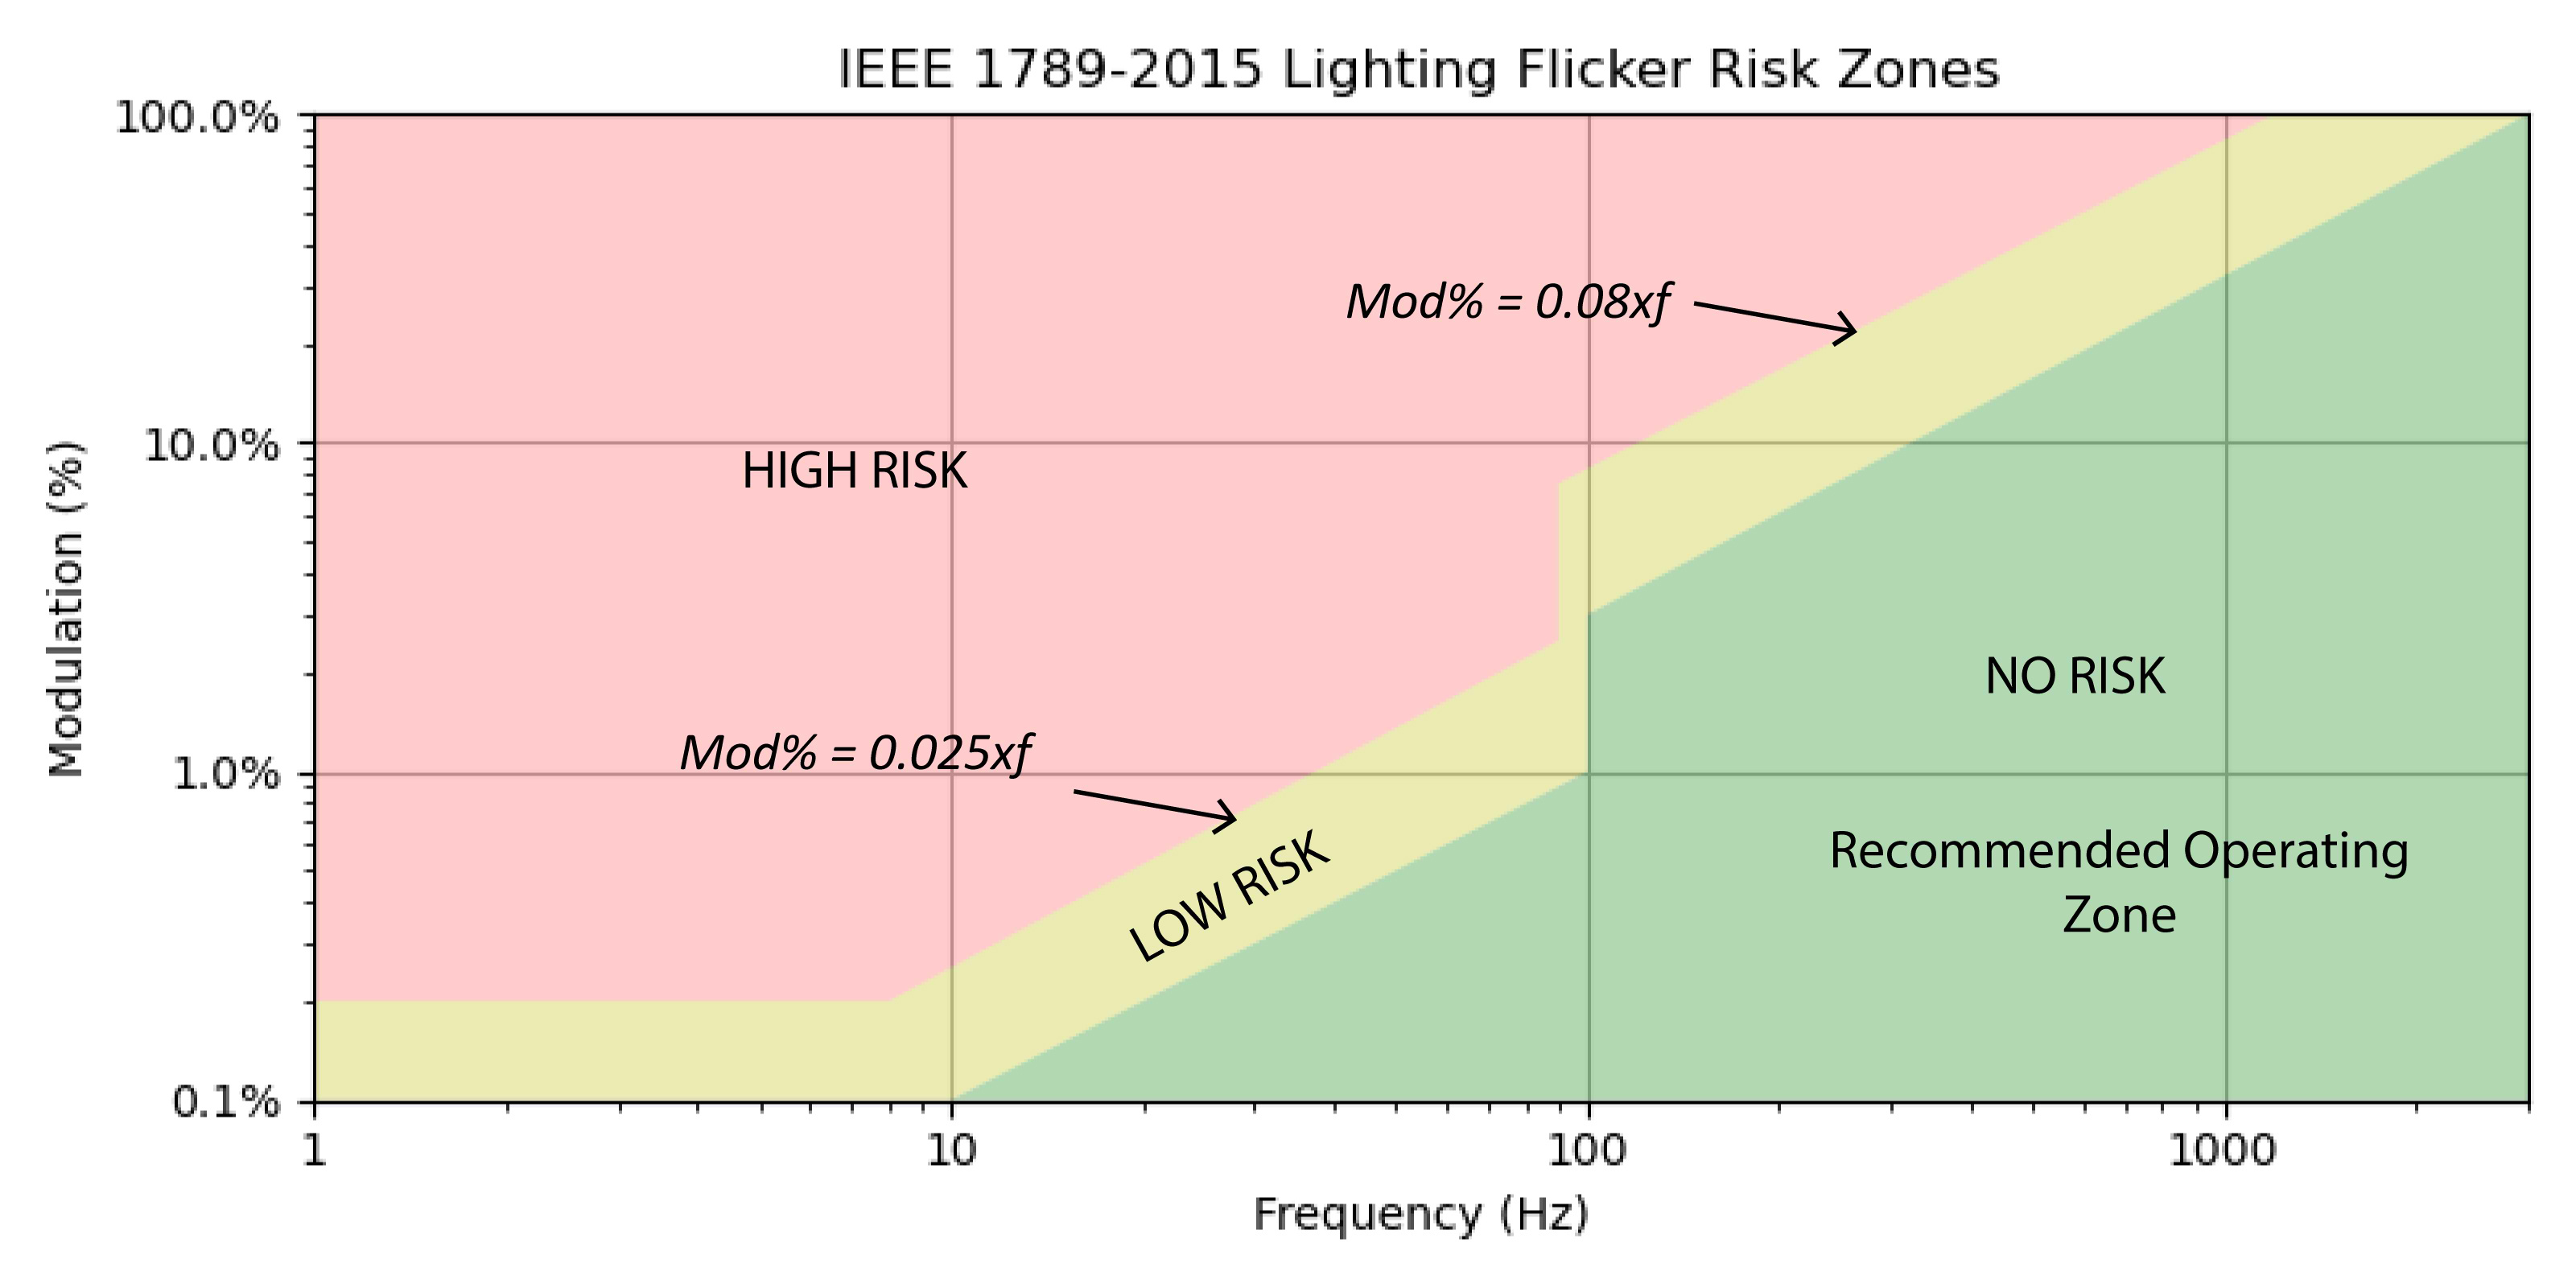 IEEE 1789-2015 risk zones.